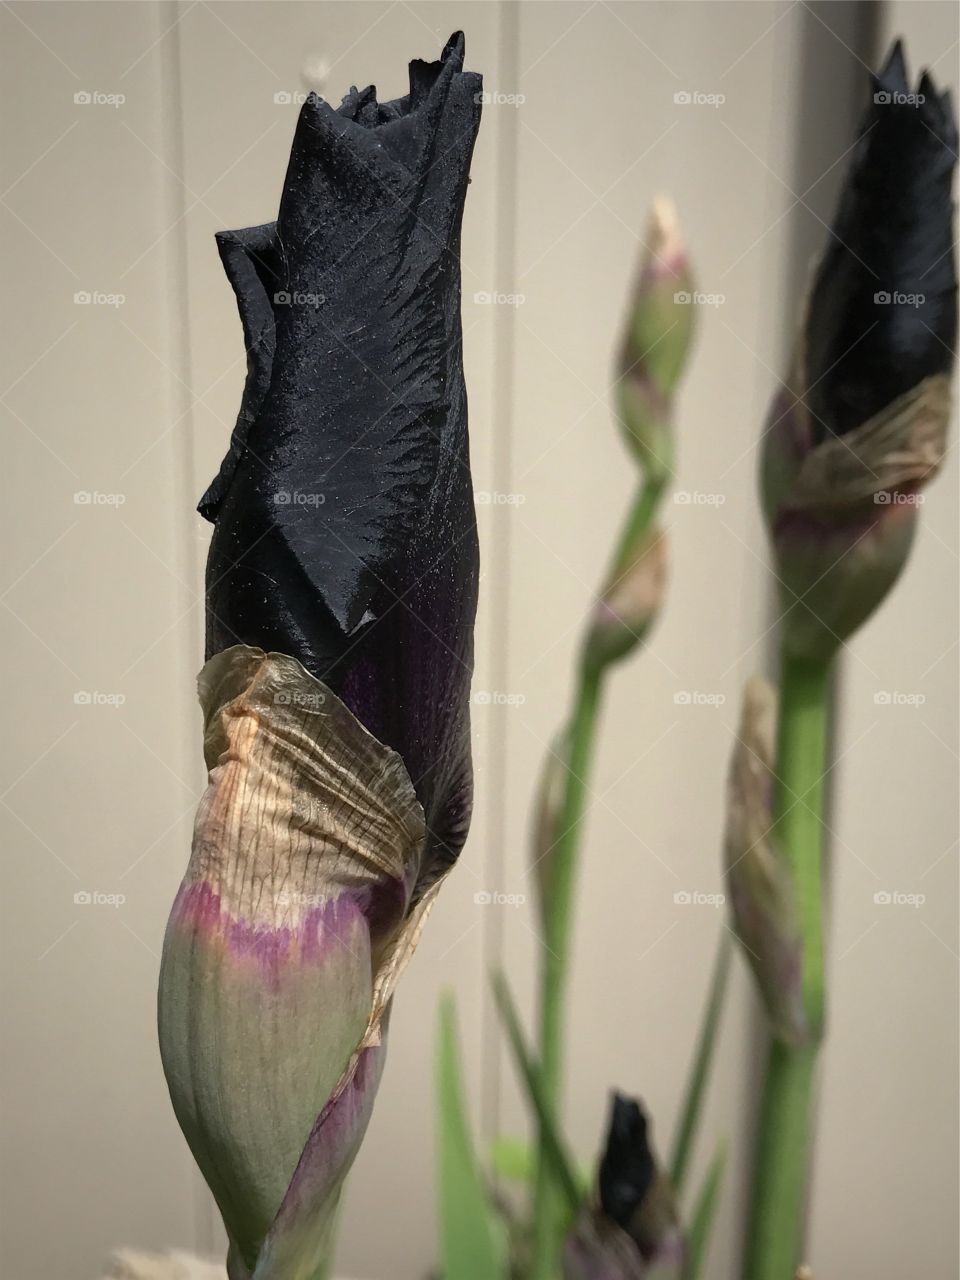 Black iris buds